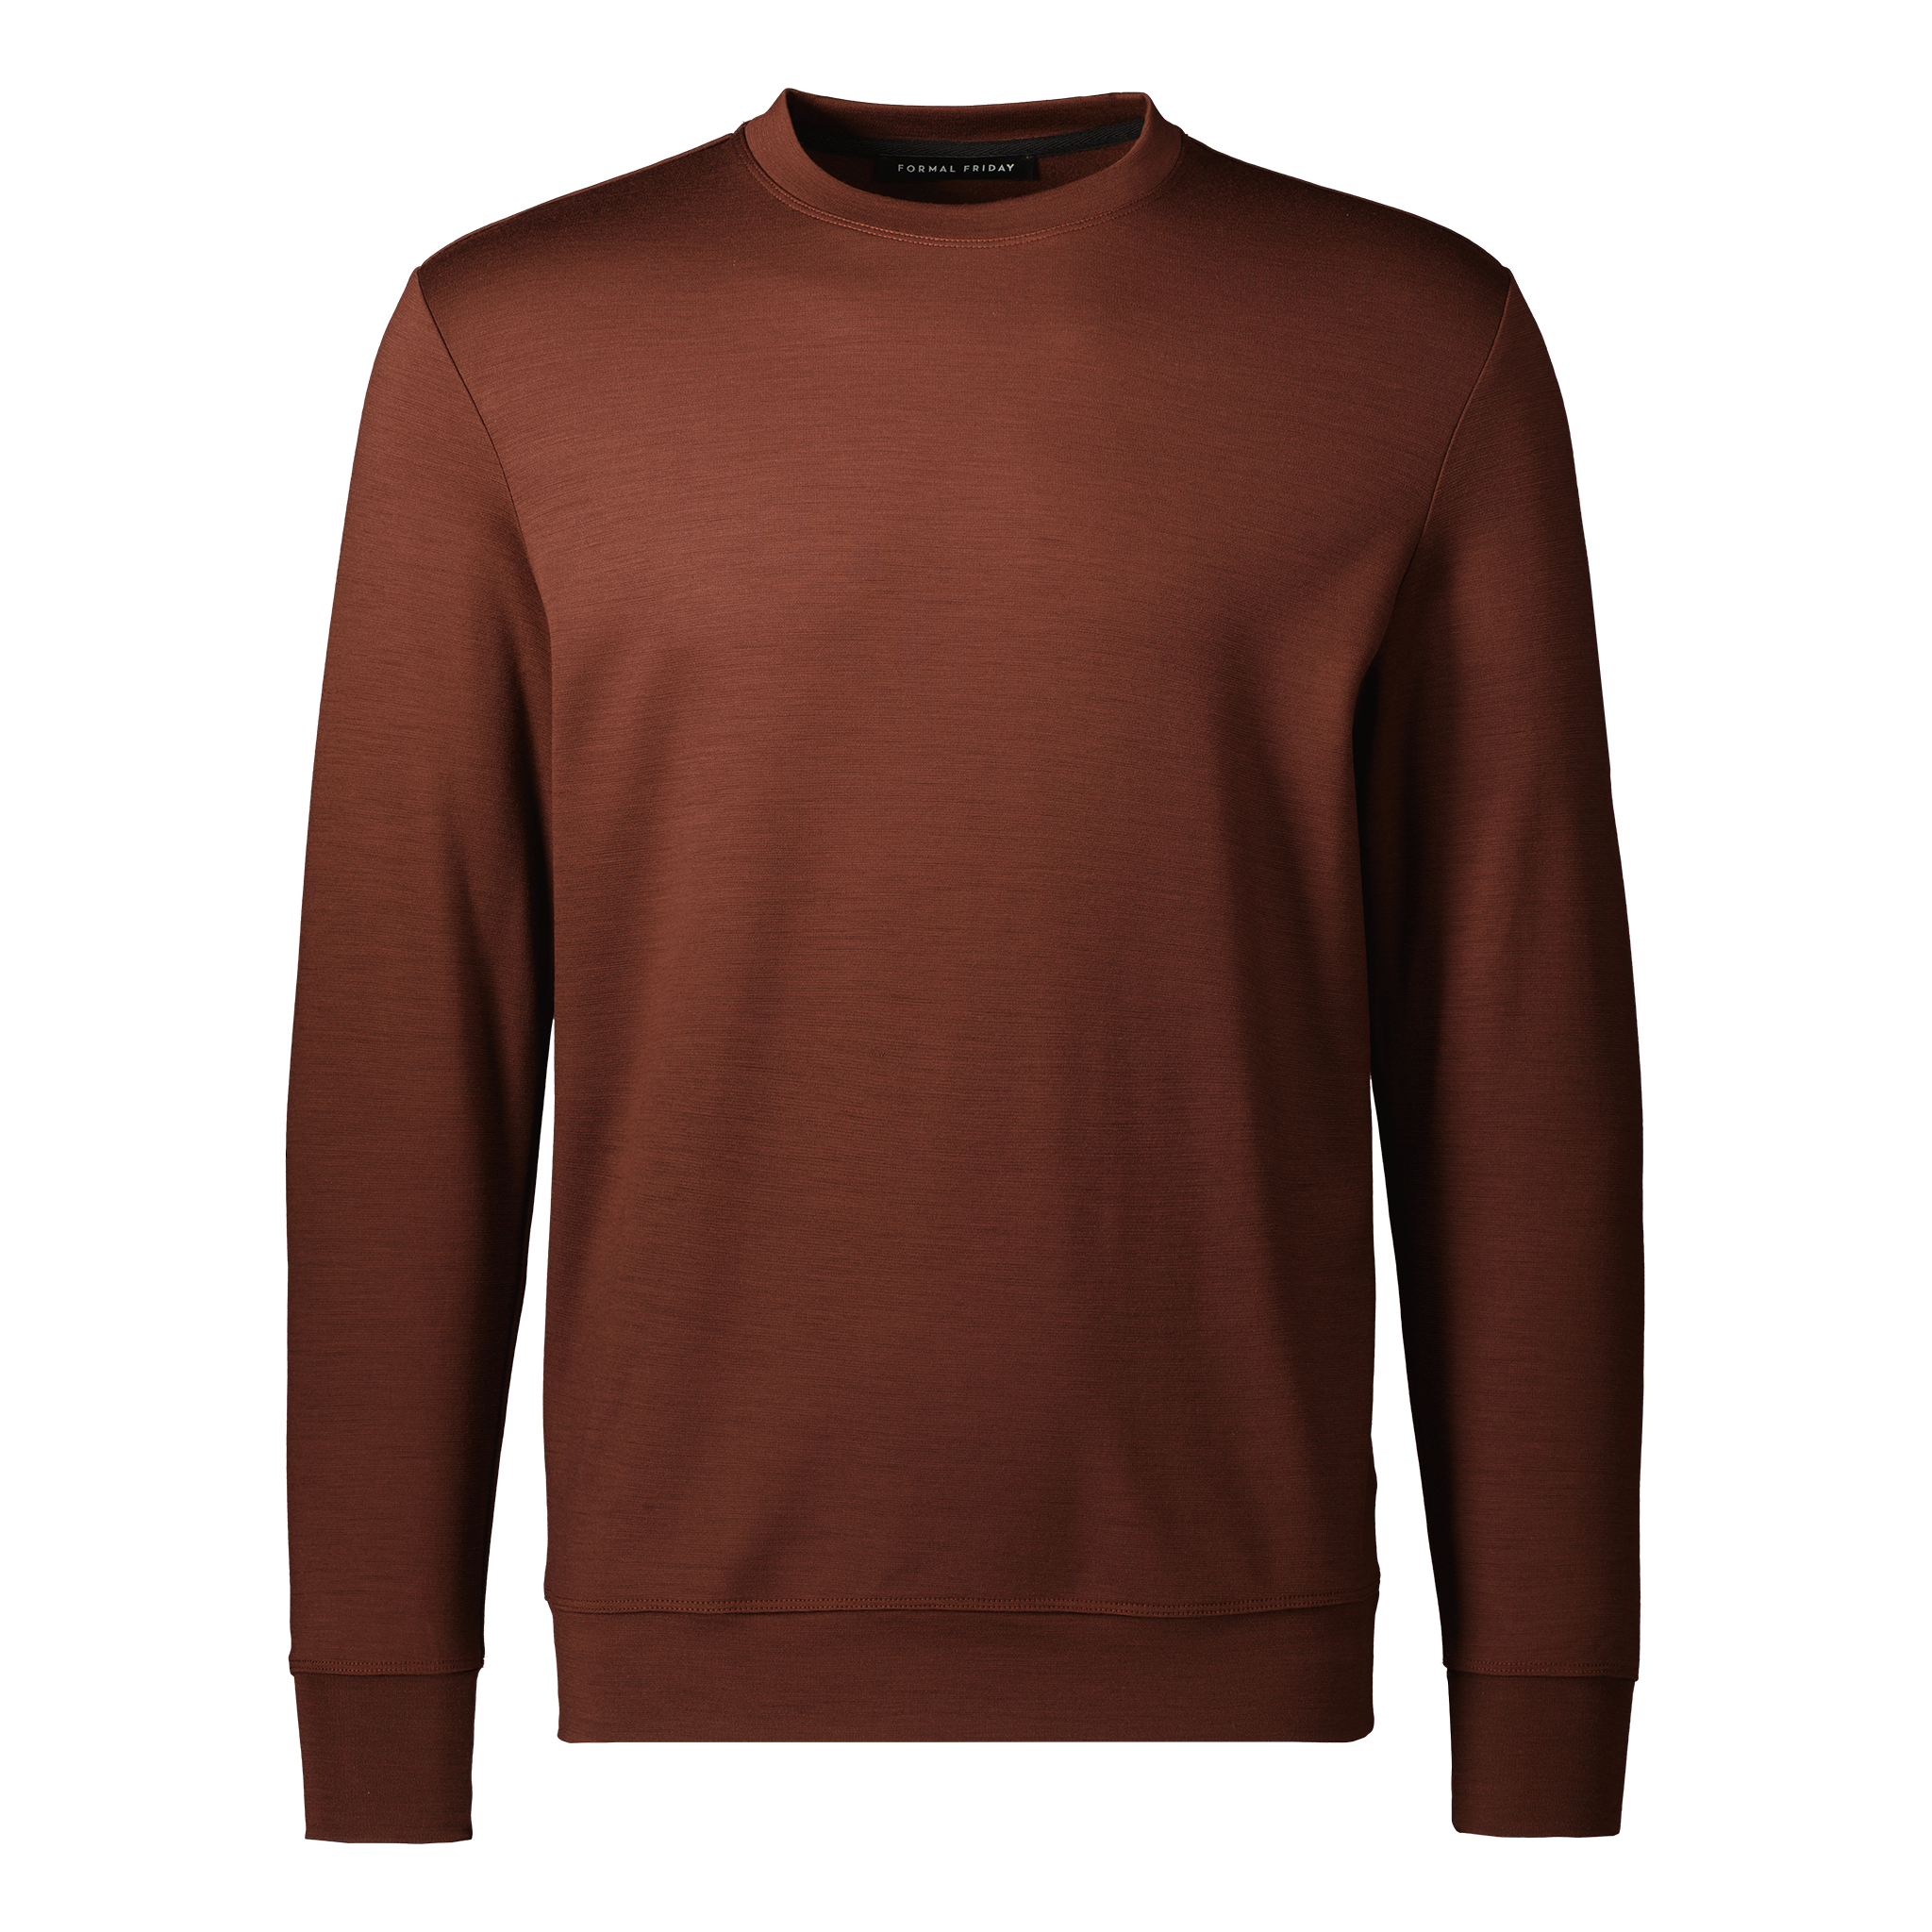 Ultrafine Merino Sweatshirt | Mahogany